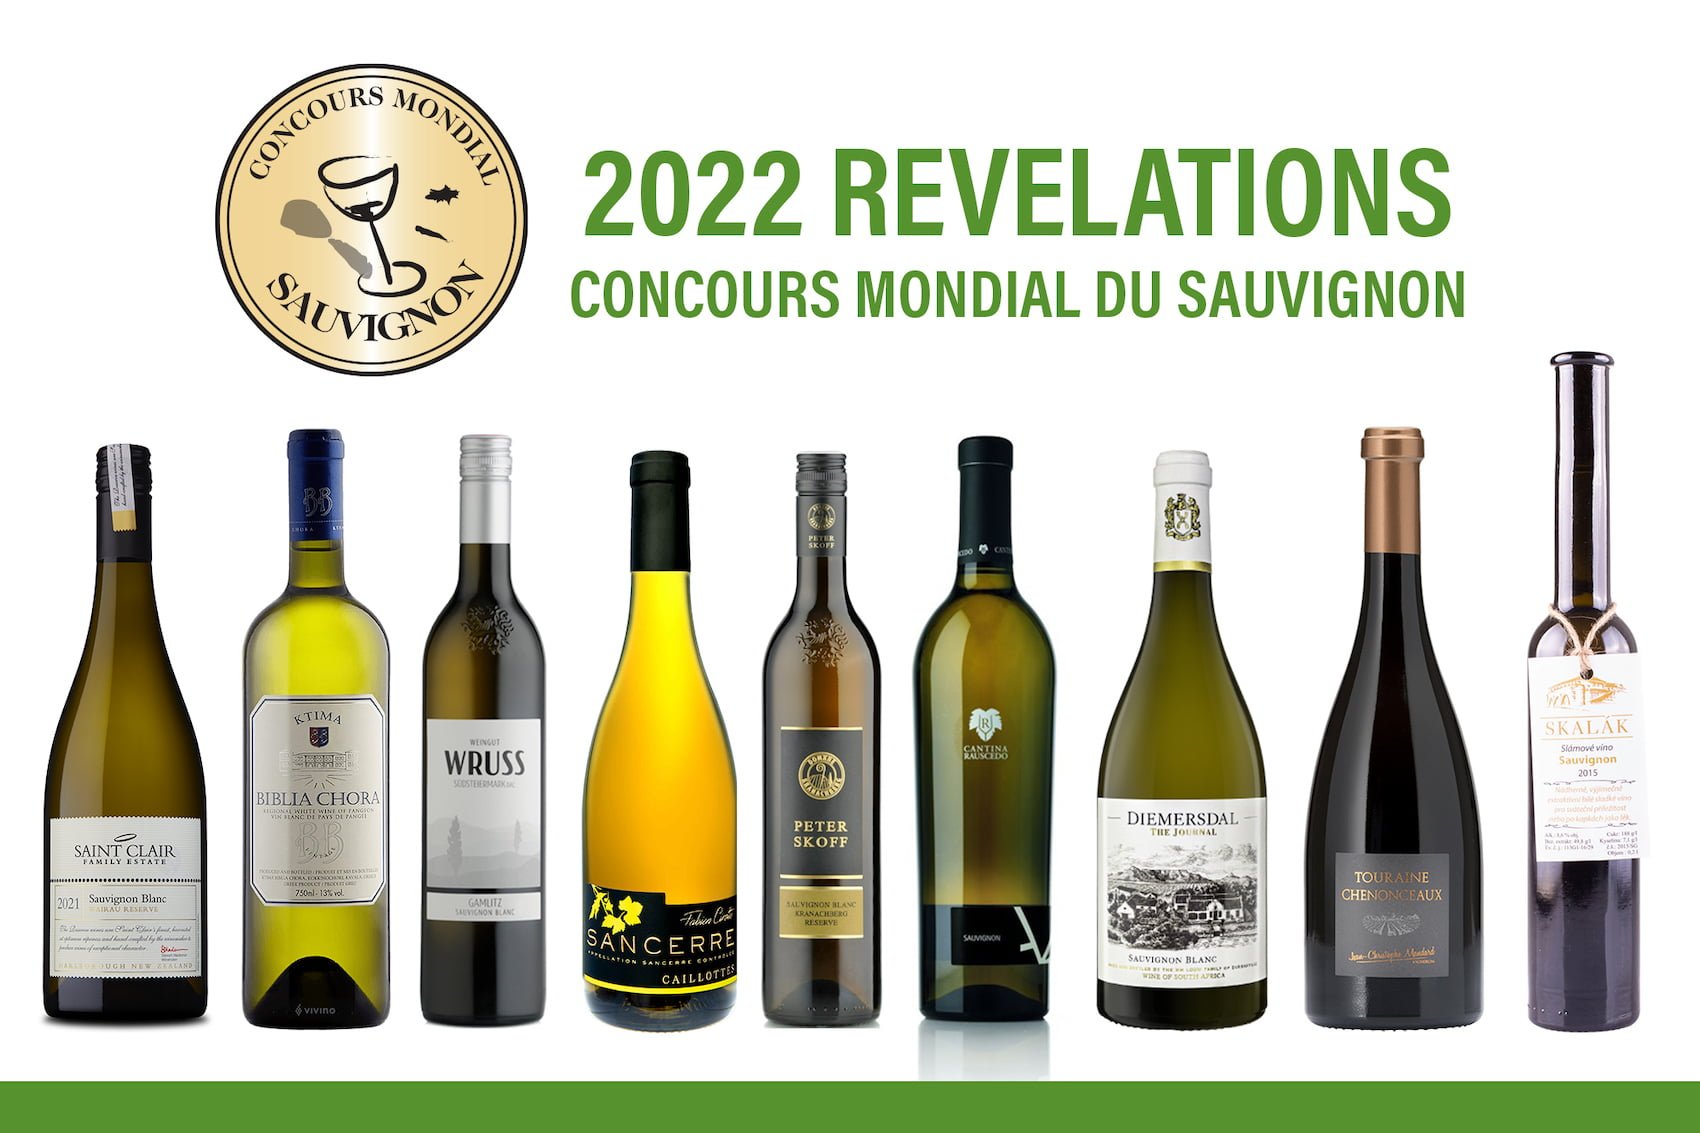 The 2022 Concours Mondial du Sauvignon reveals results